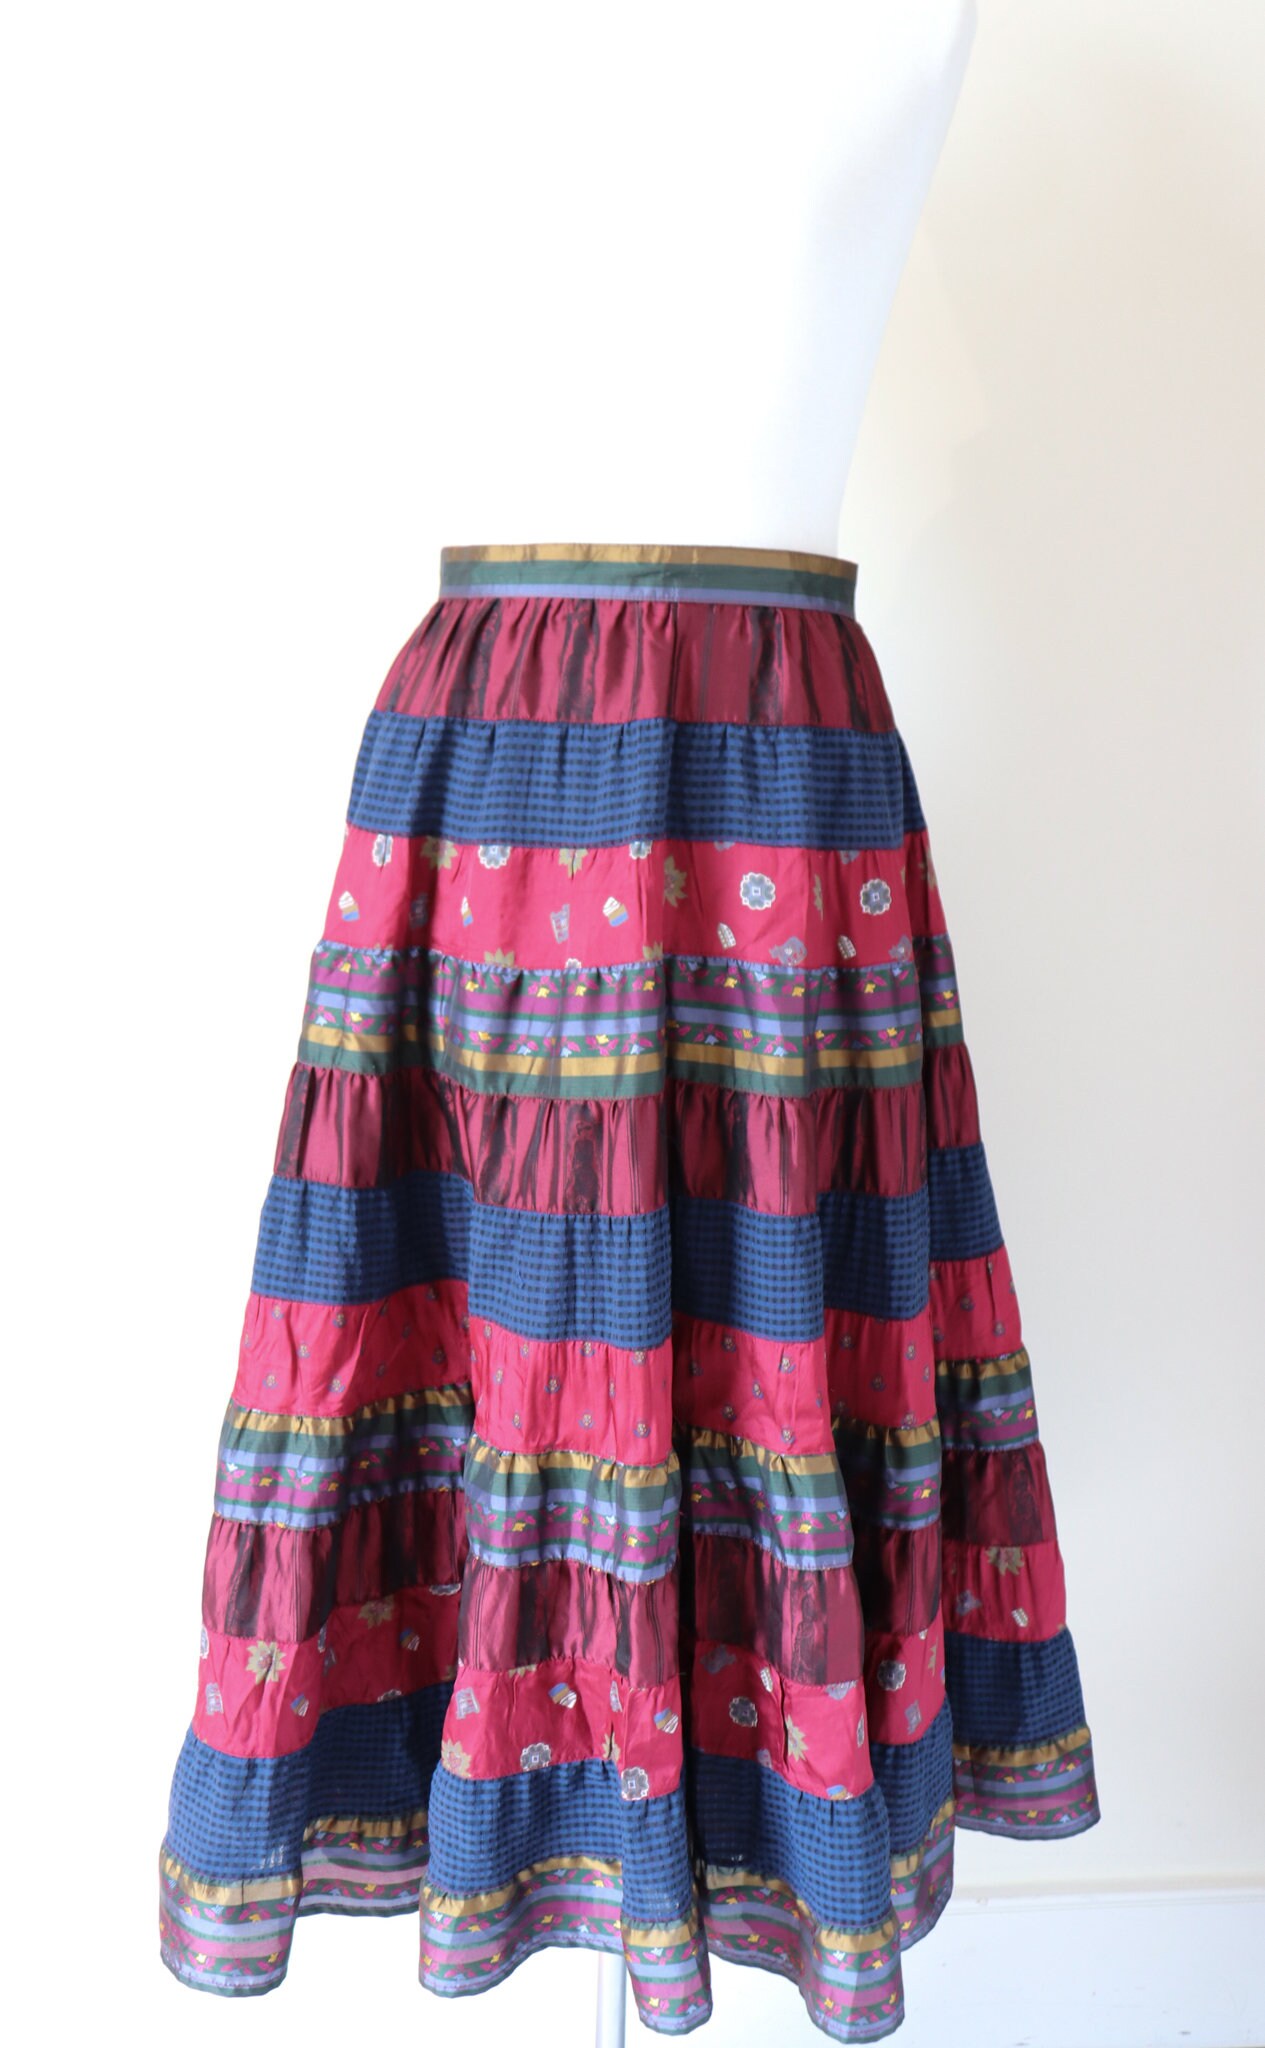 Vintage Tiered Skirt 1980s Creation Mademoiselle - Etsy UK